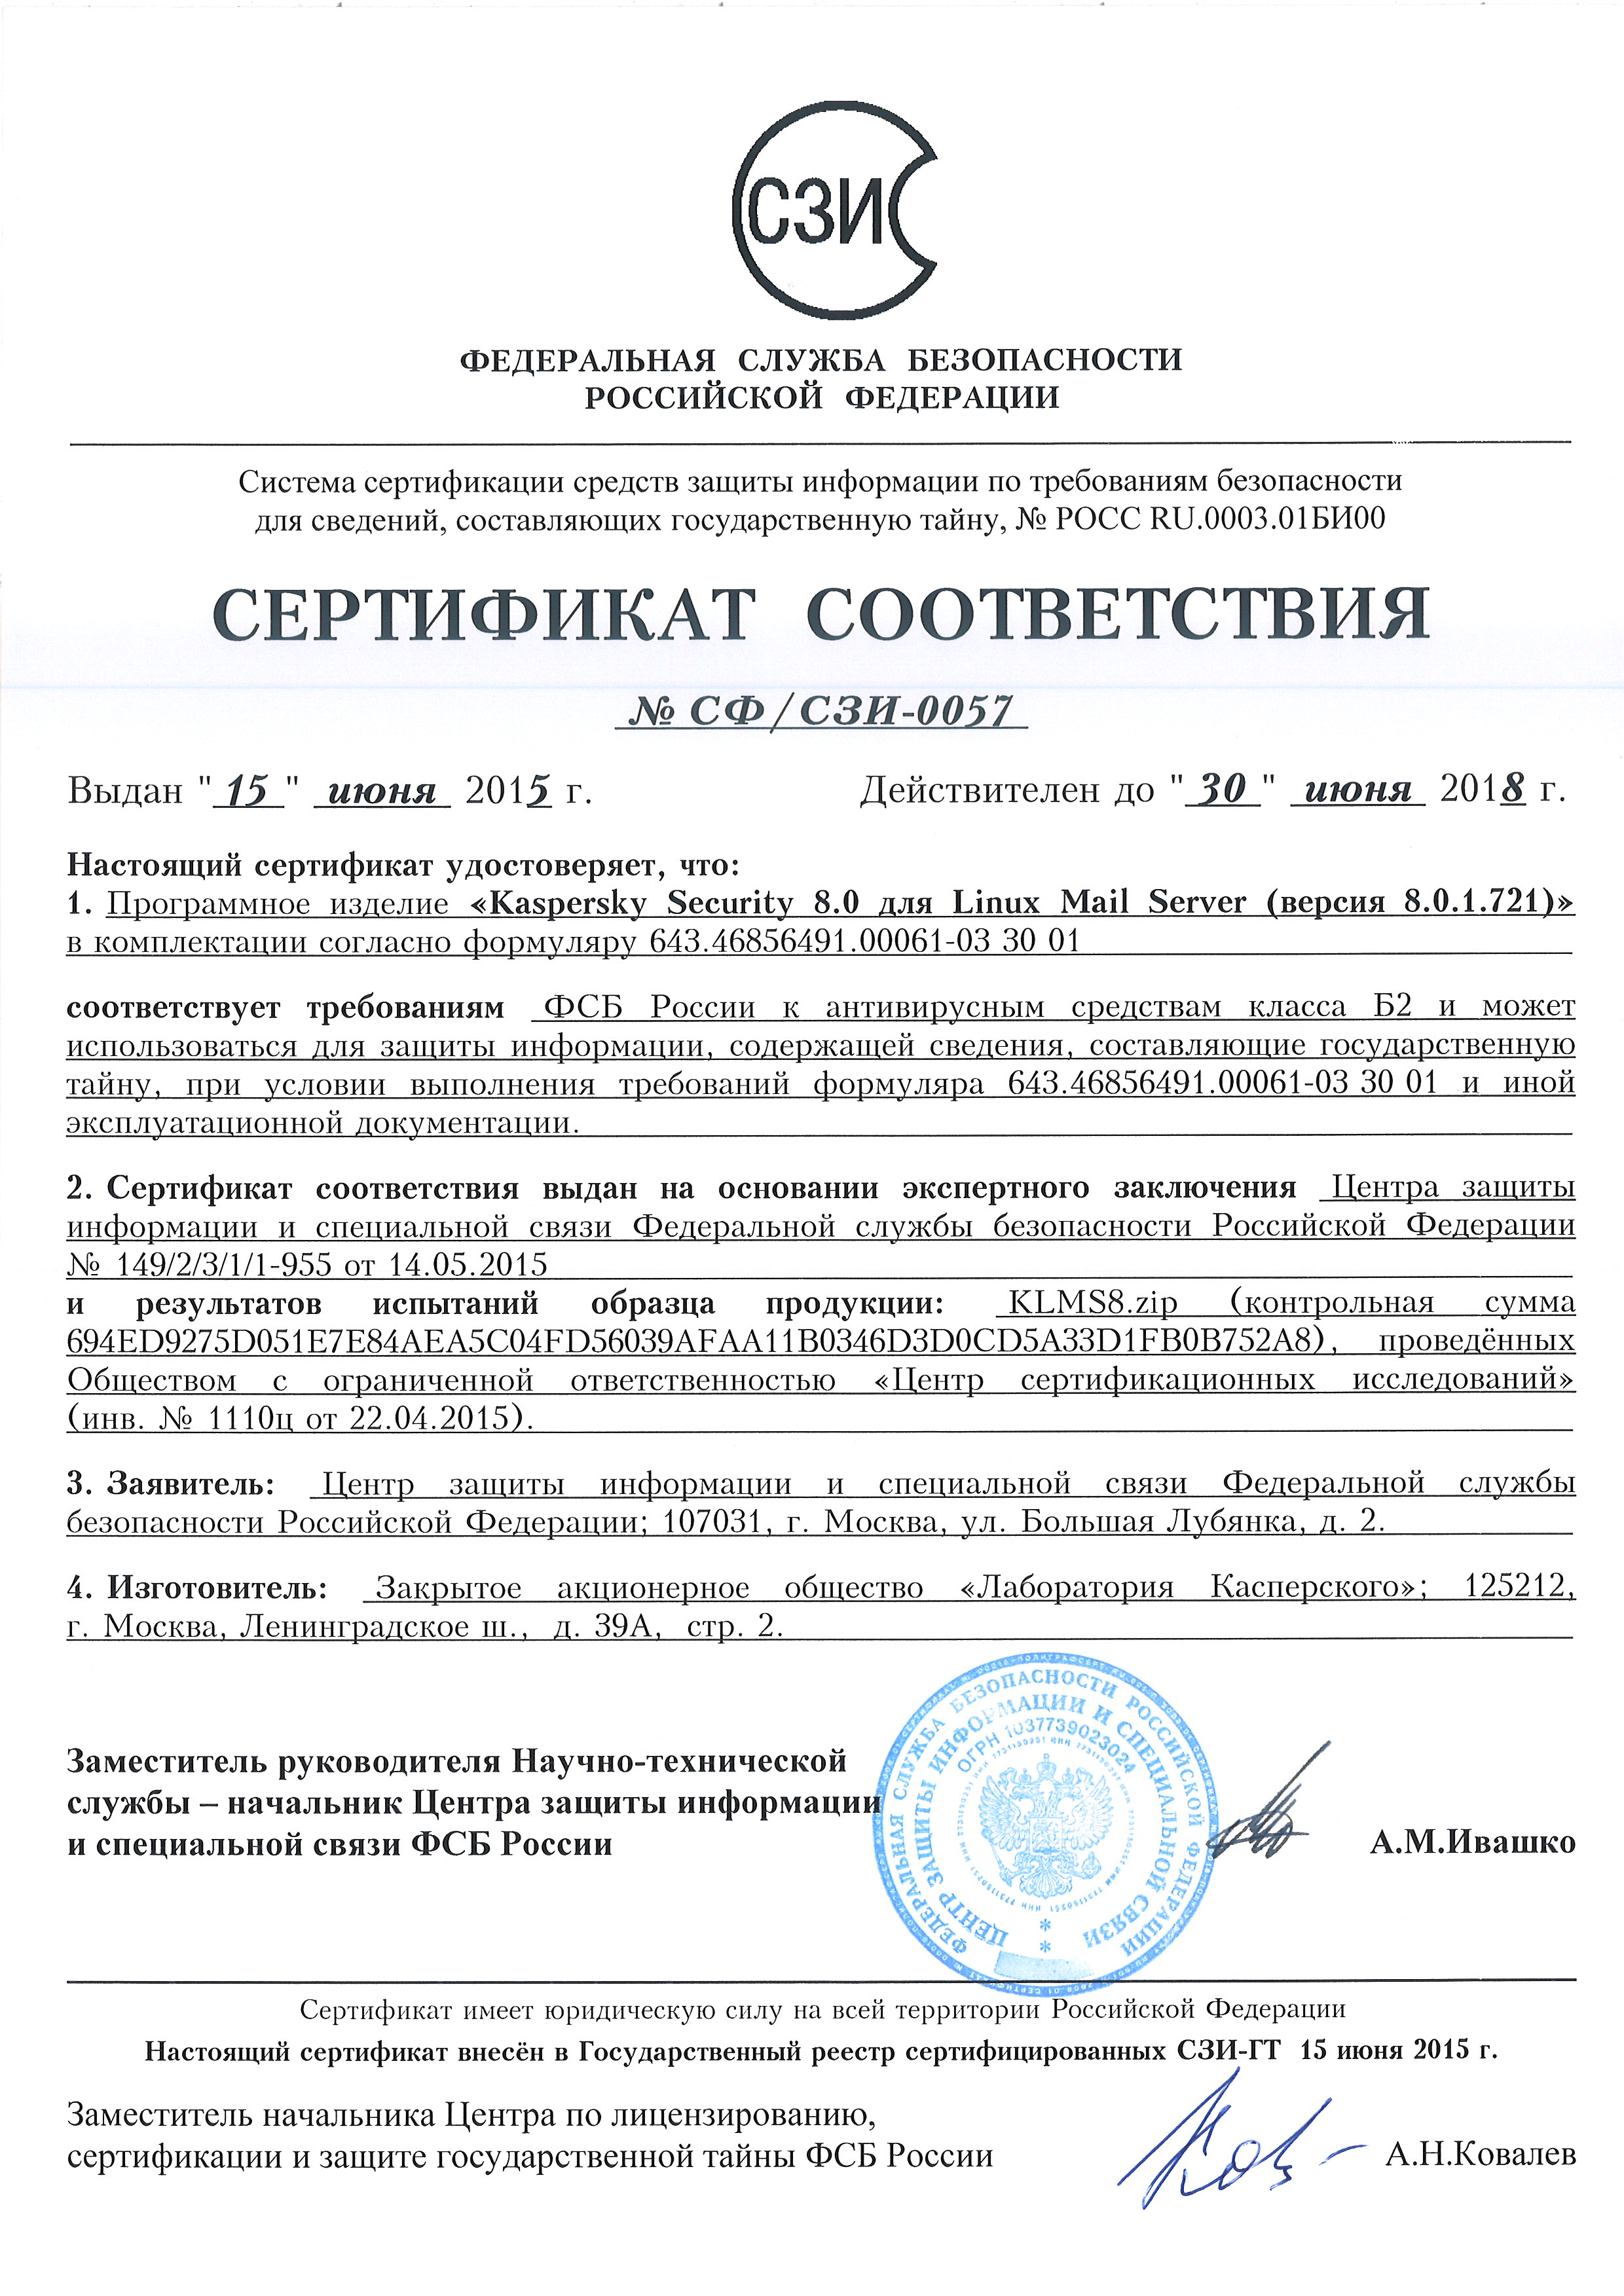 Сертификат средств защиты информации. ЛГШ-503 сертификат соответствия ФСТЭК 3519. Сертификат соответствия ЛГШ-503.